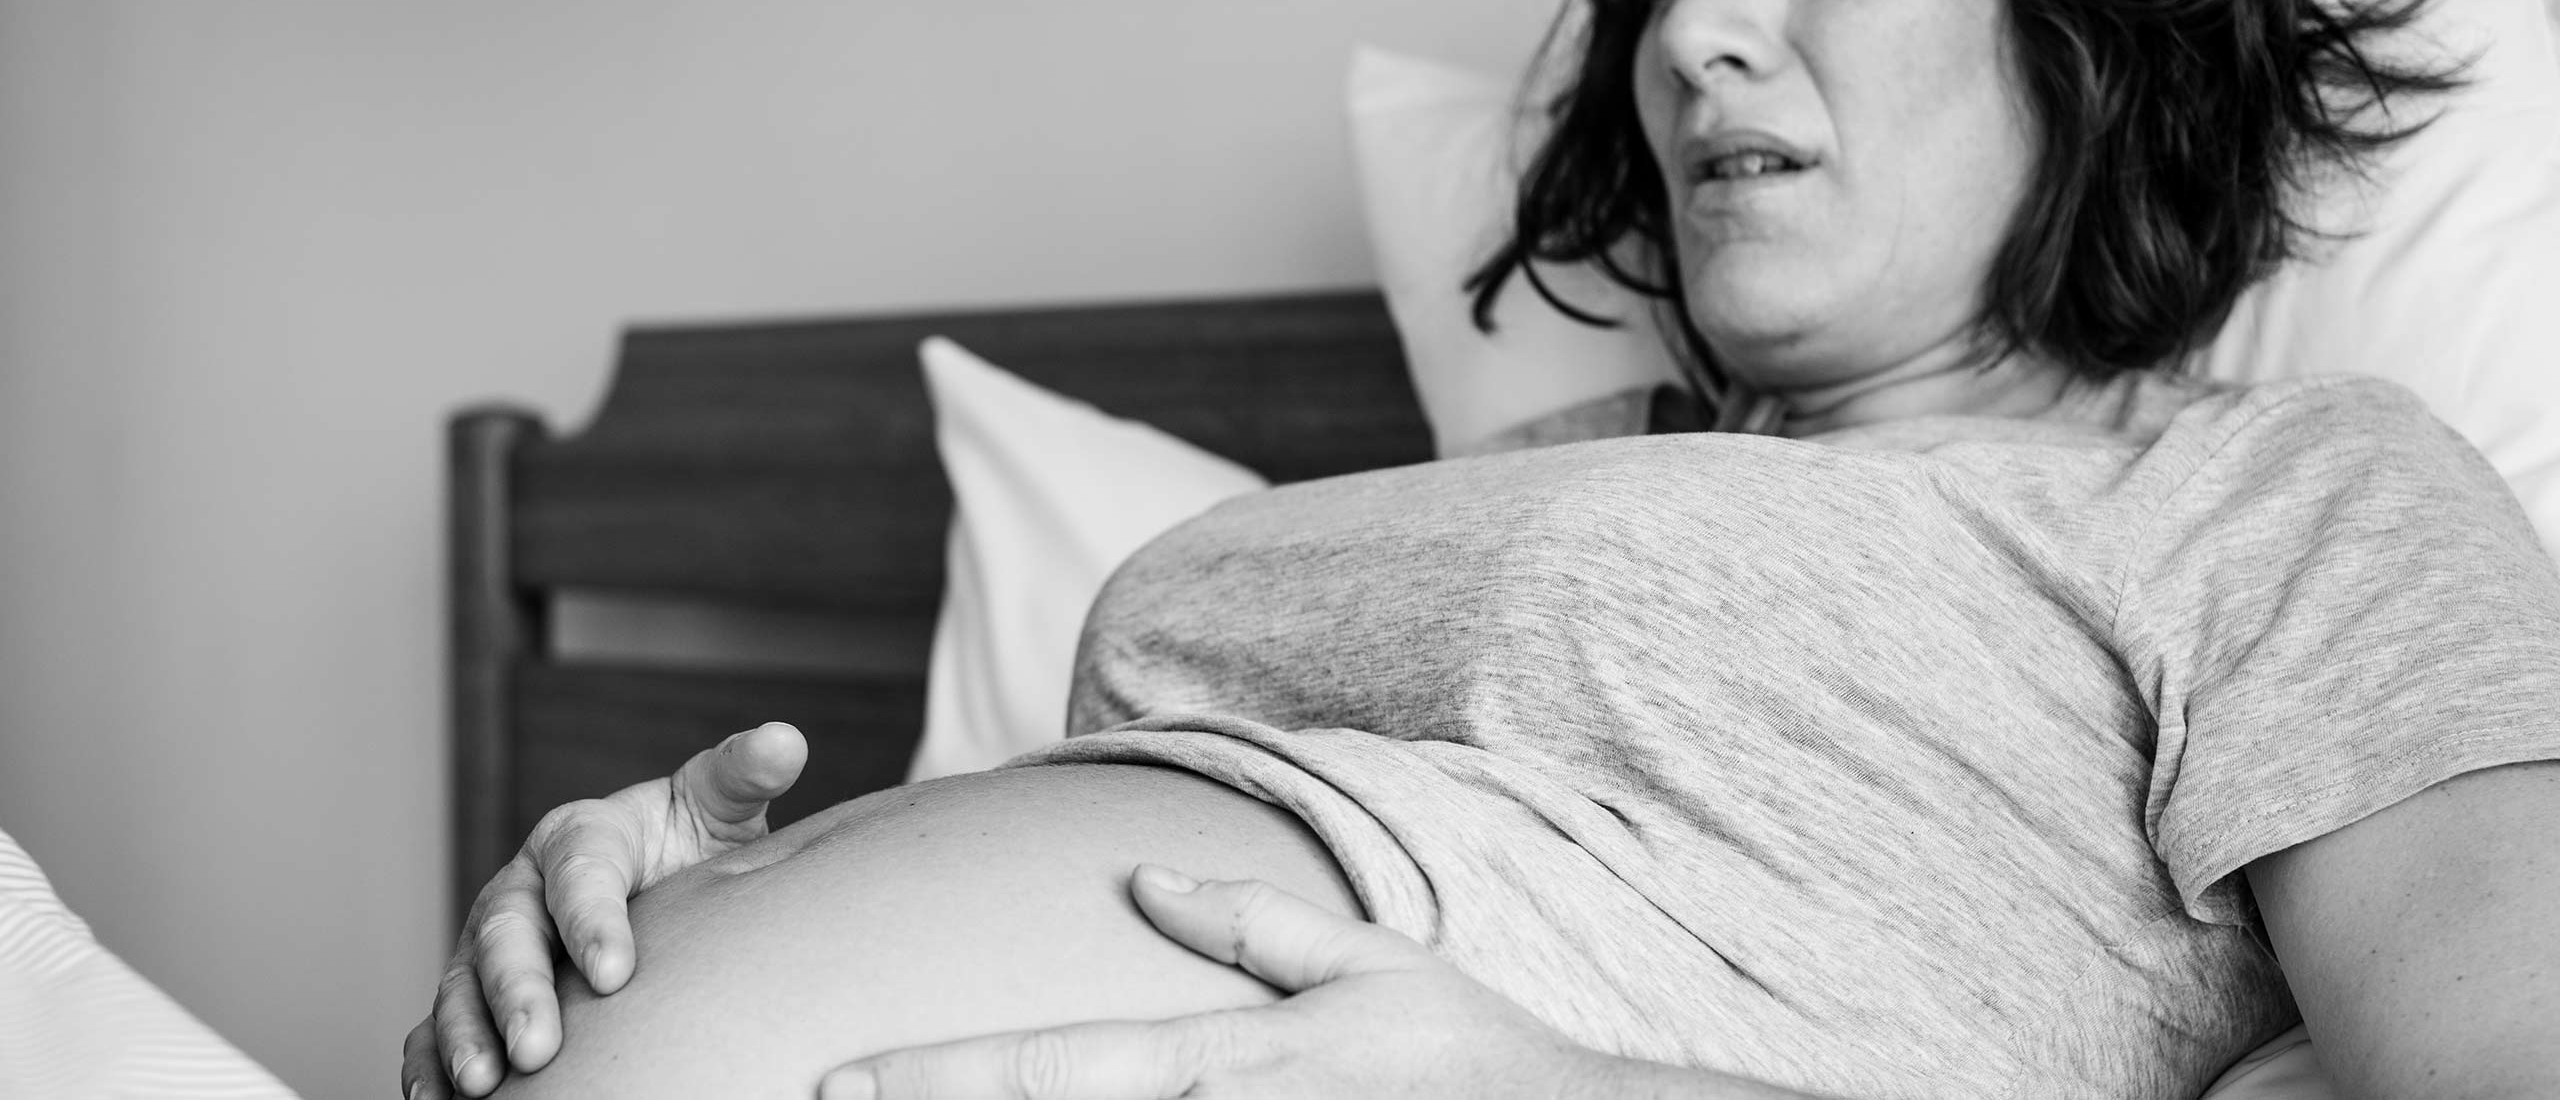 Mijn ervaring met zwangerschapsverlies